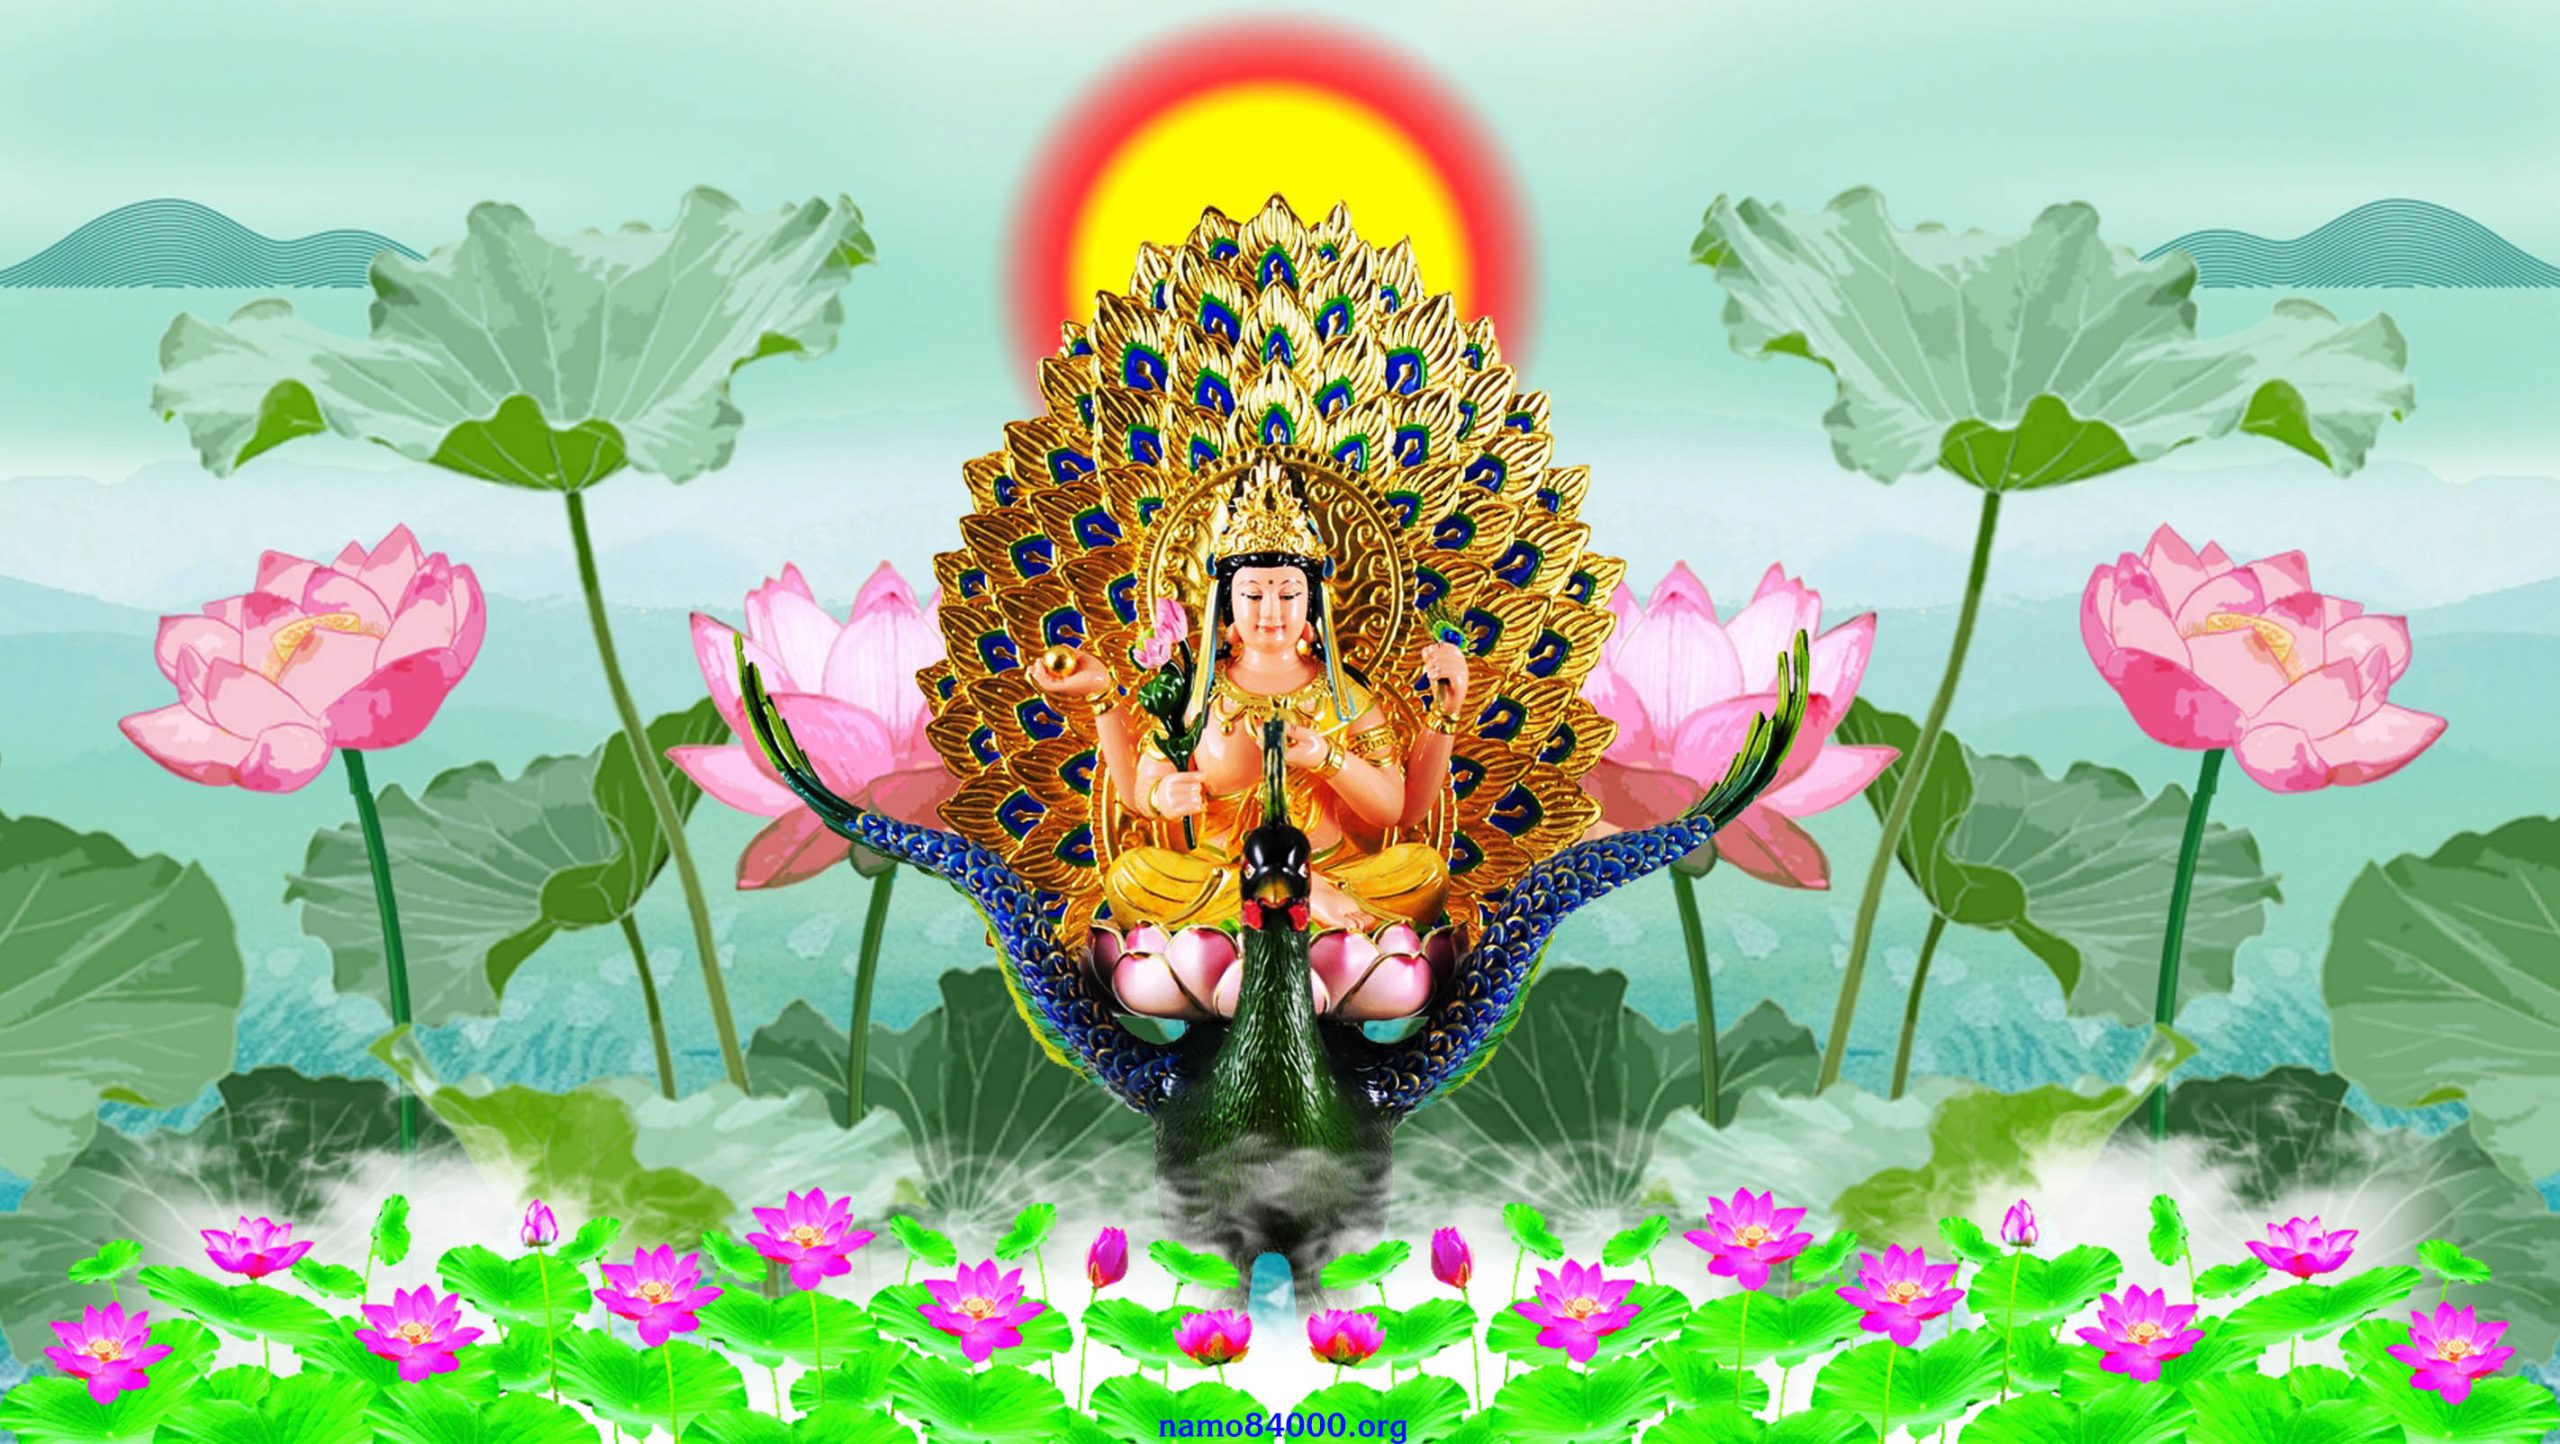 Khổng Tước Minh Vương Bồ tát – Mahamayuri Bodhisattva – 孔雀明王菩薩